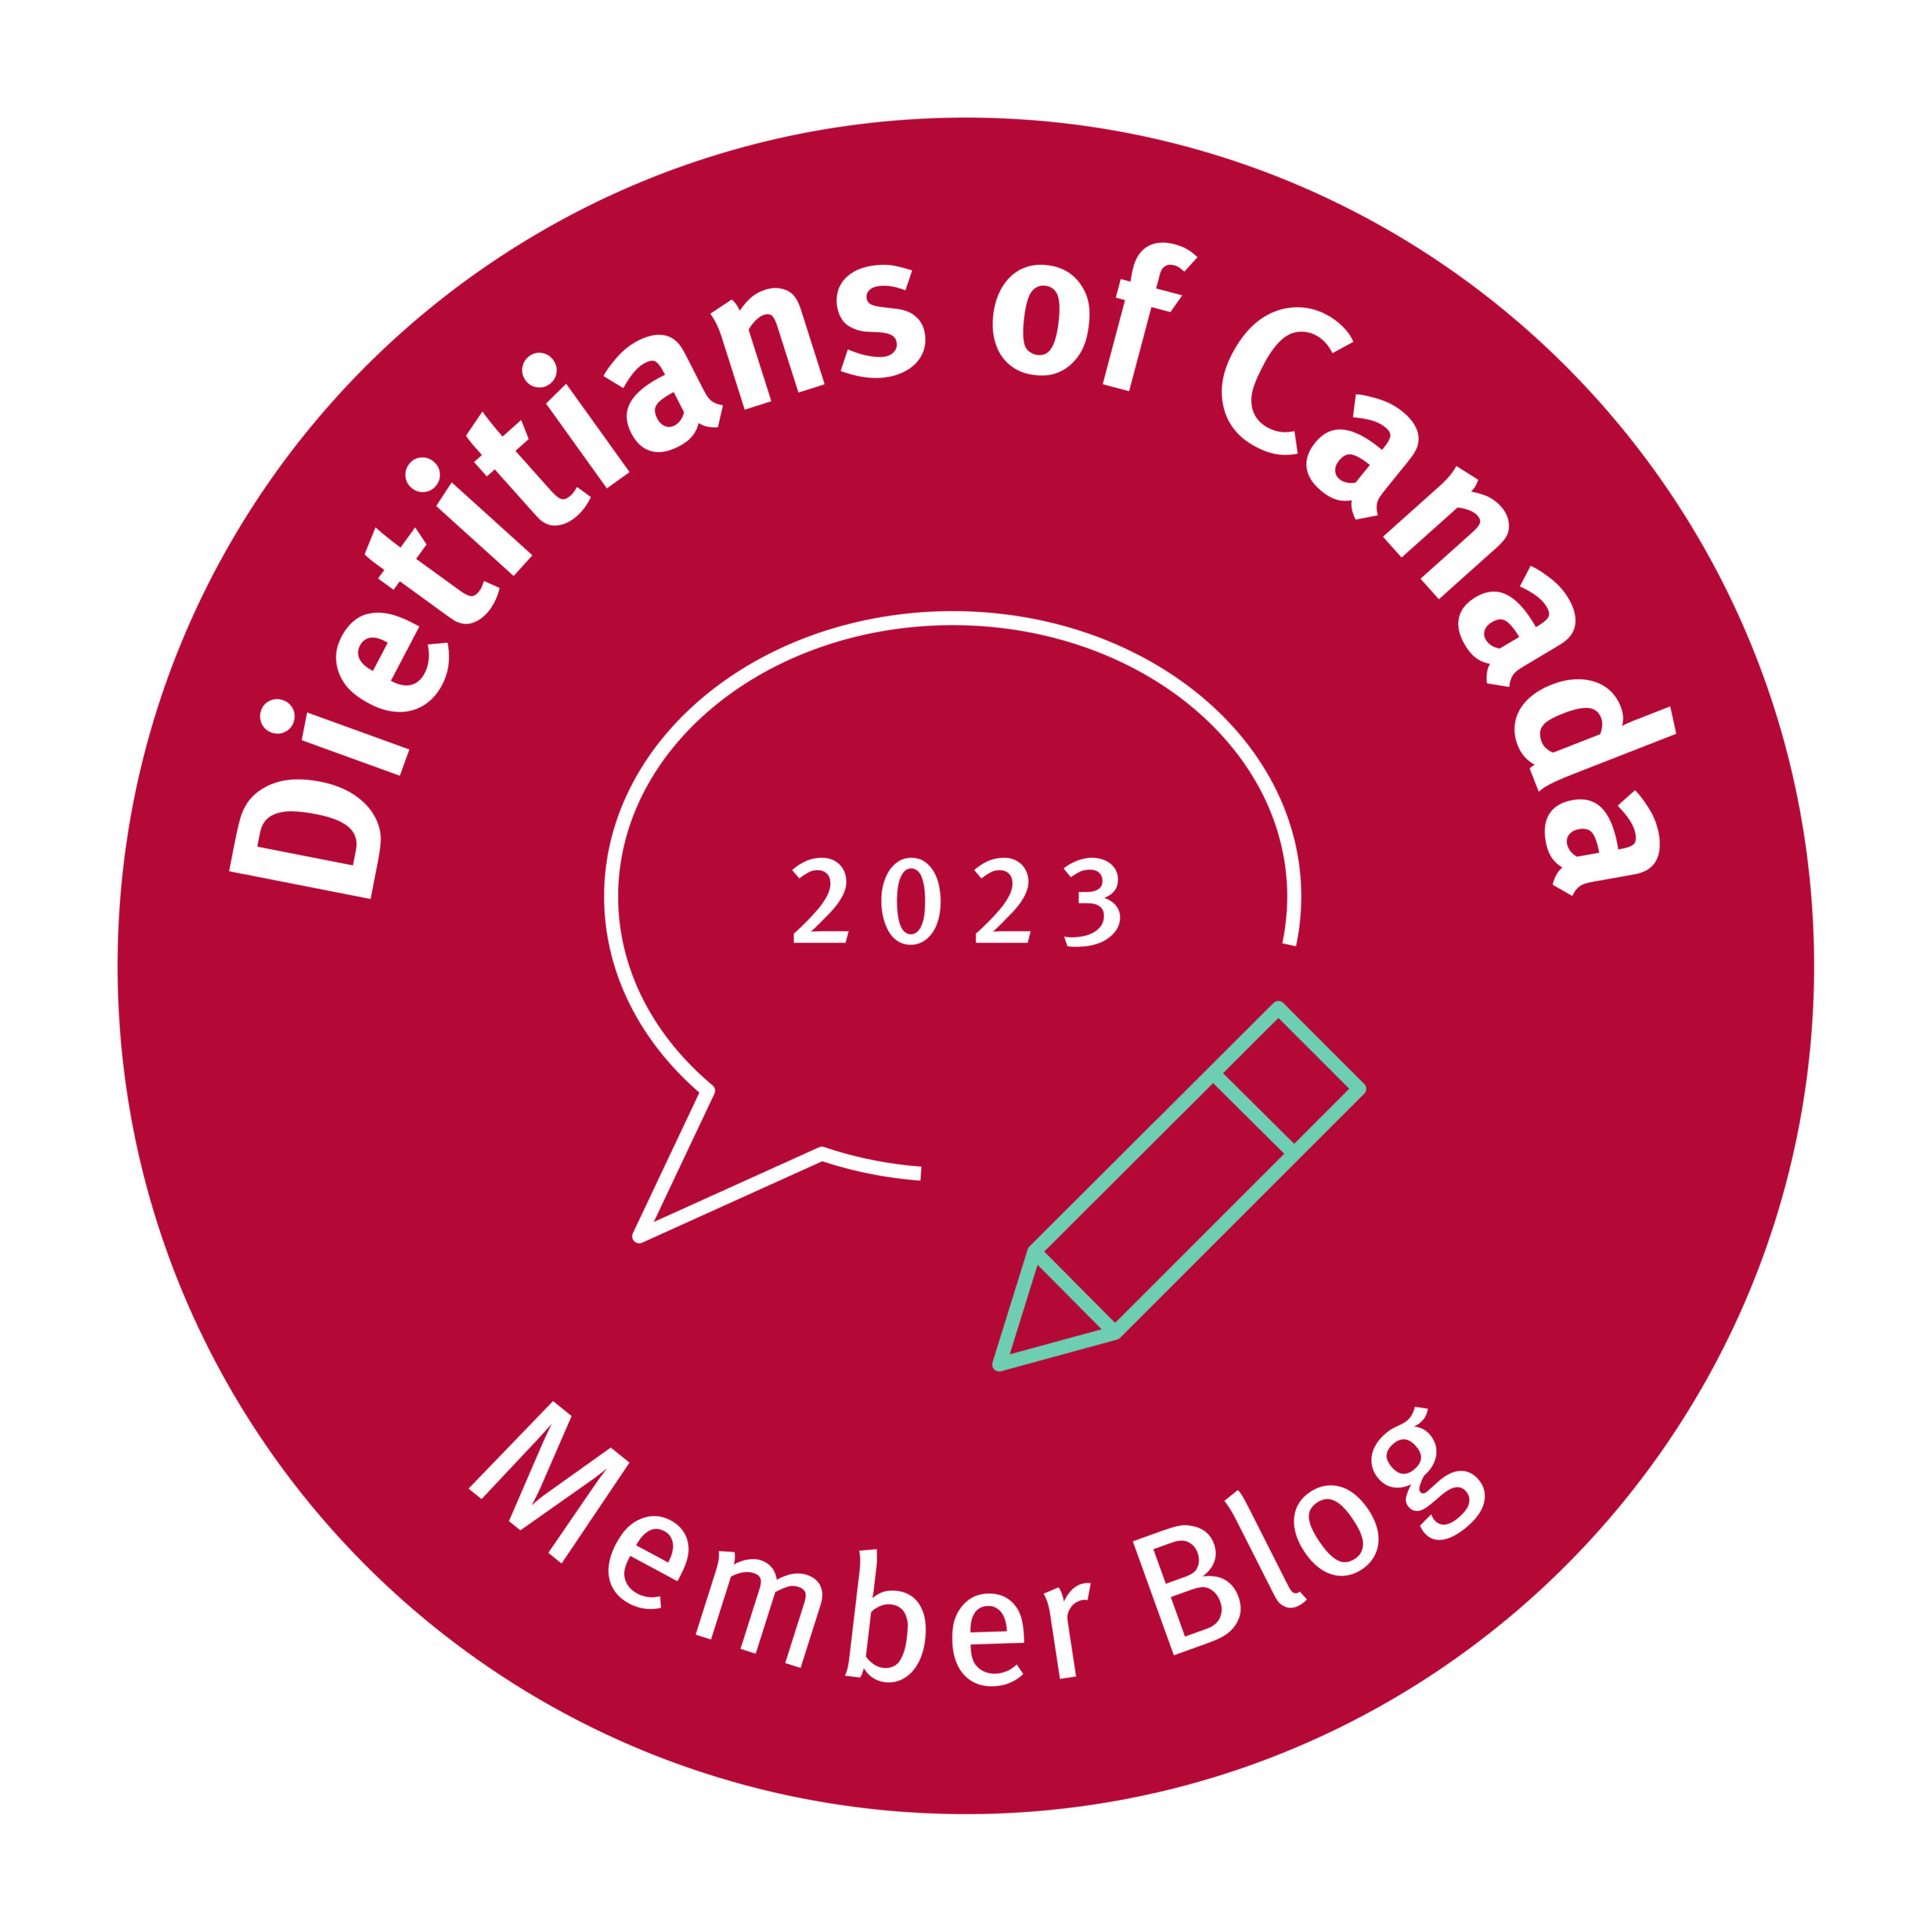 Dietitians of Canada